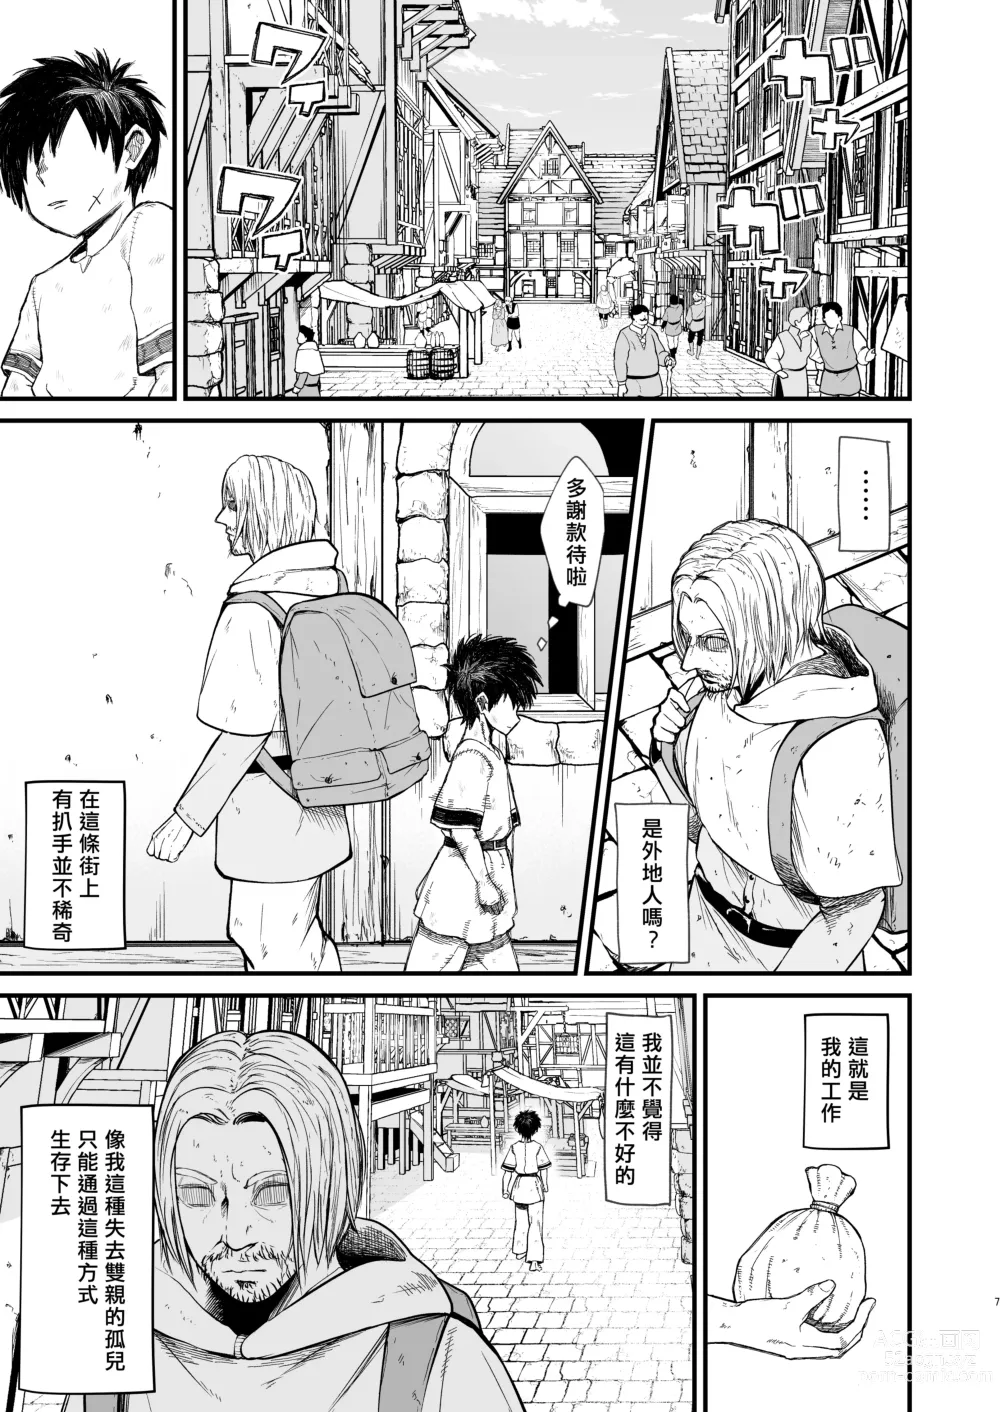 Page 7 of doujinshi Kachiku Inma